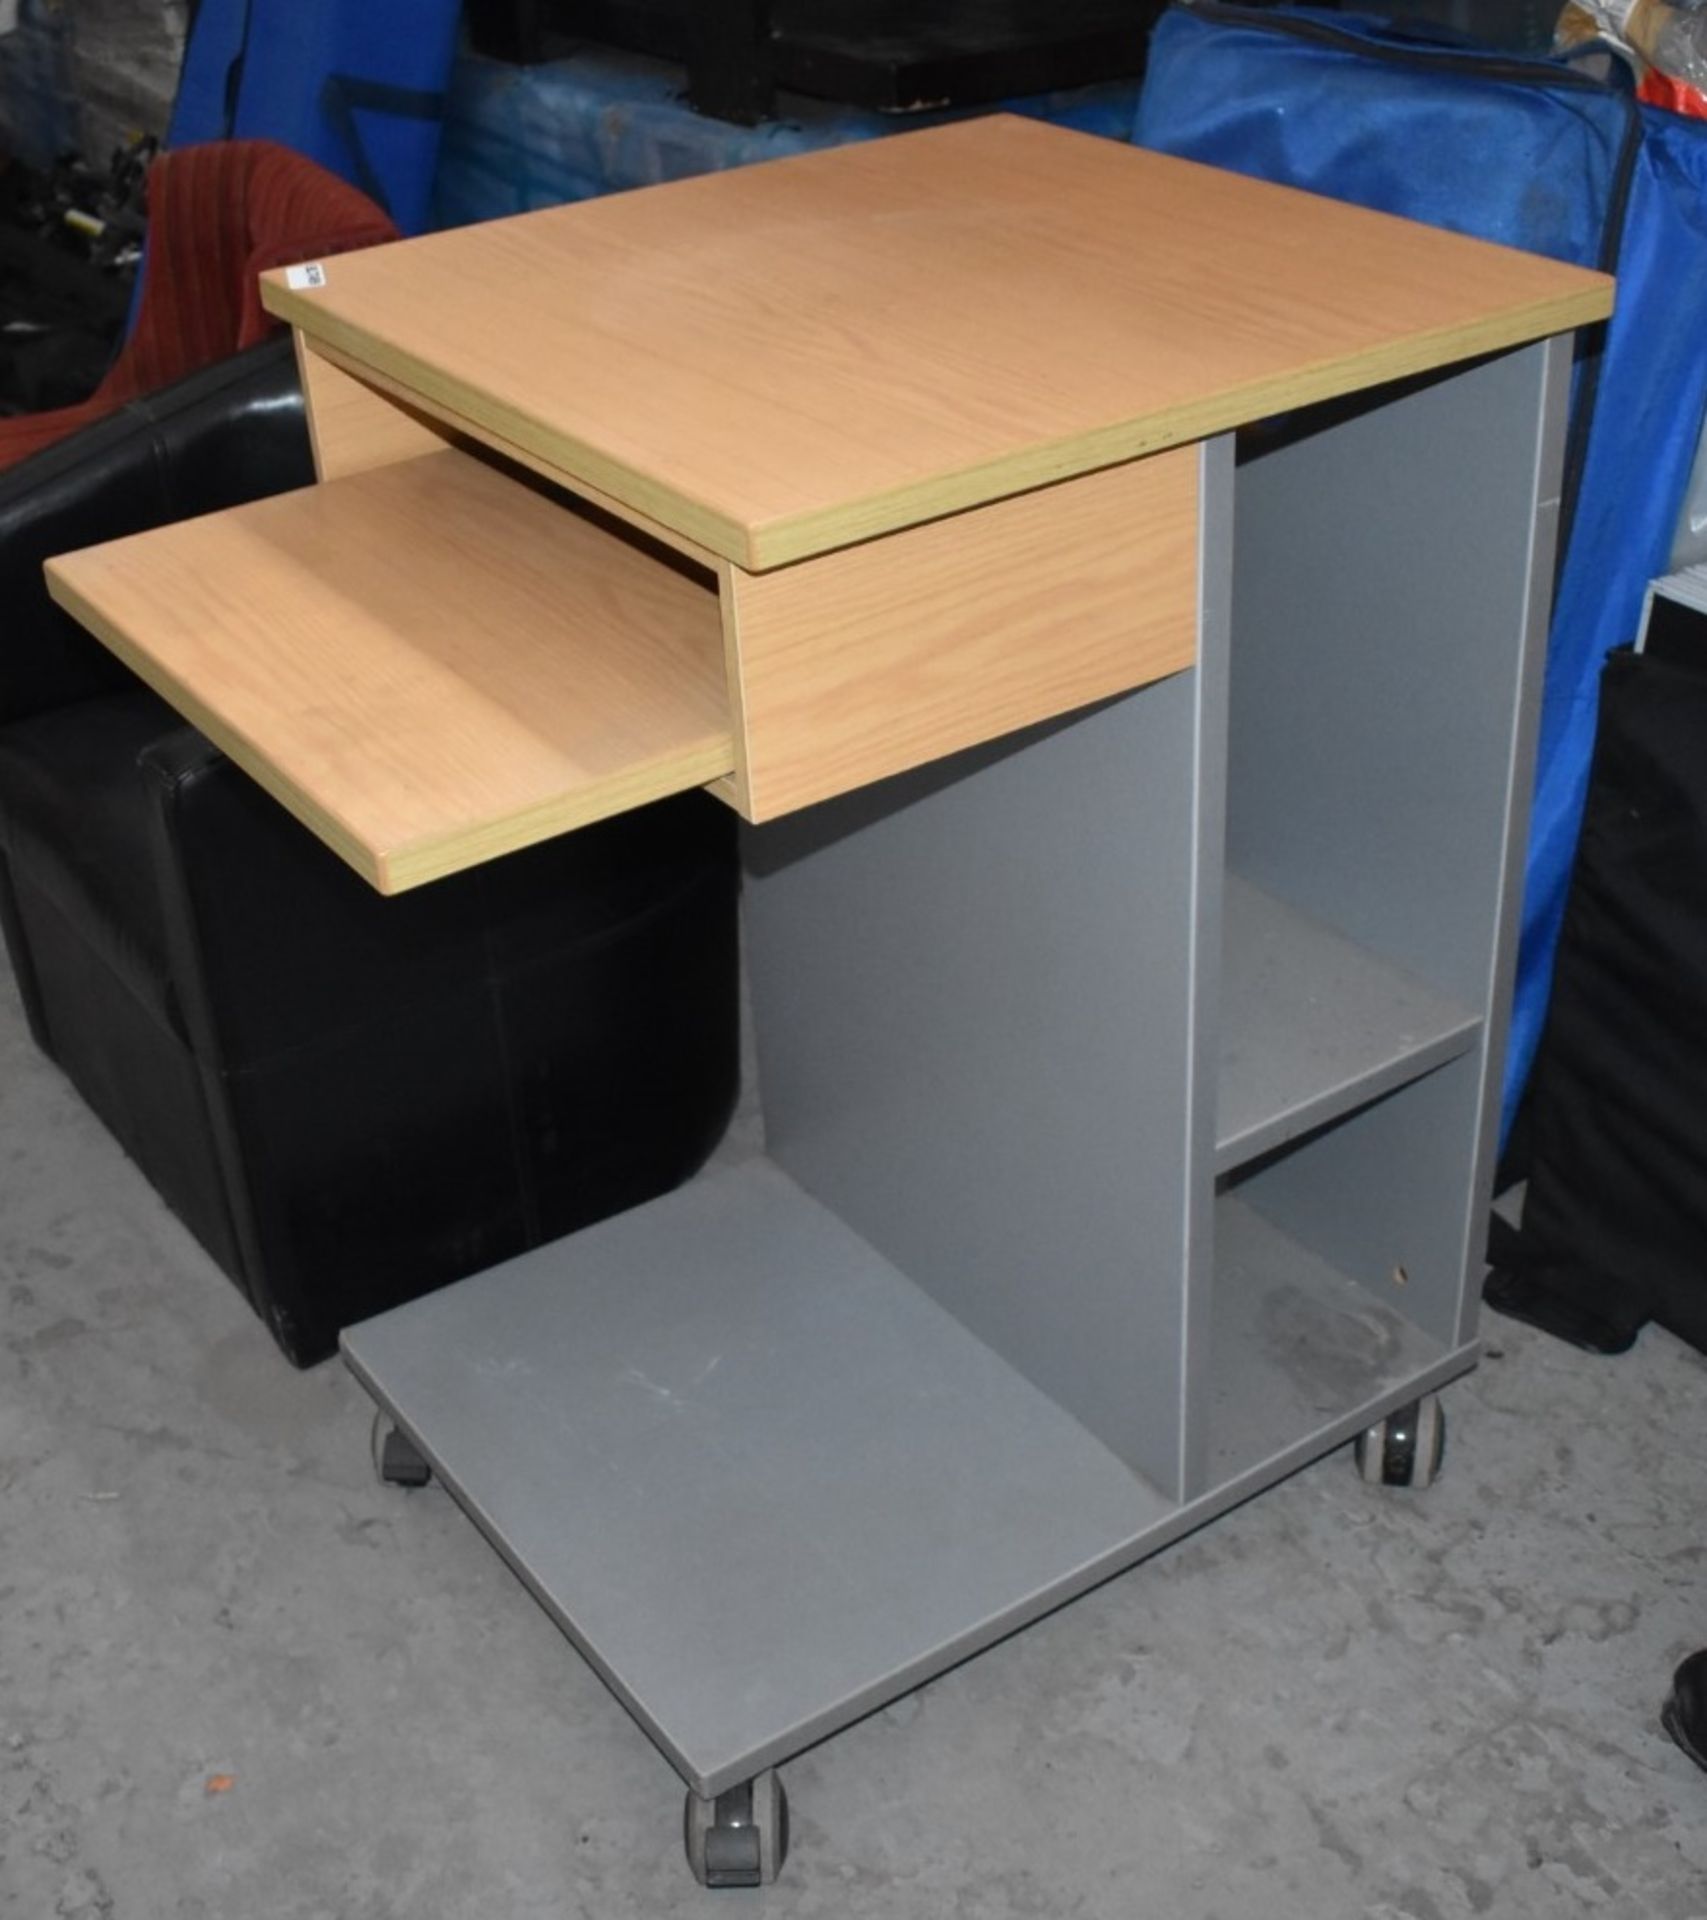 1 x Mobile Office Desk / Lecturn - H95 x W60 x D60 cms - Ref BLT499 - CL011 - Location: Altrincham